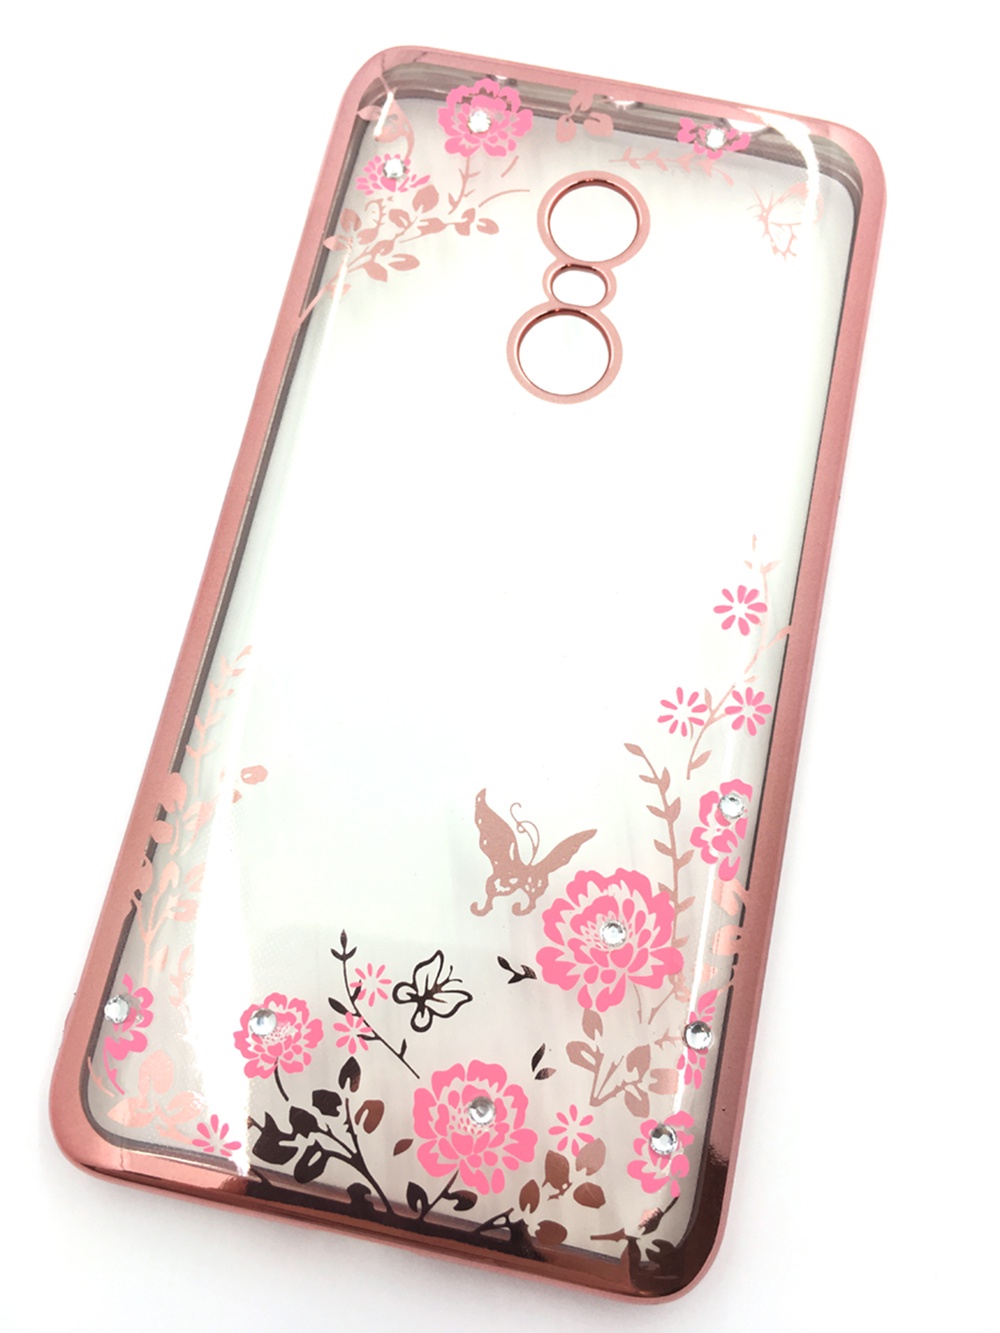 Чехол для сотового телефона Мобильная мода Xiaomi Redmi Note 4 Силиконовая, прозрачная накладка со стразами, 6 344R, розовый